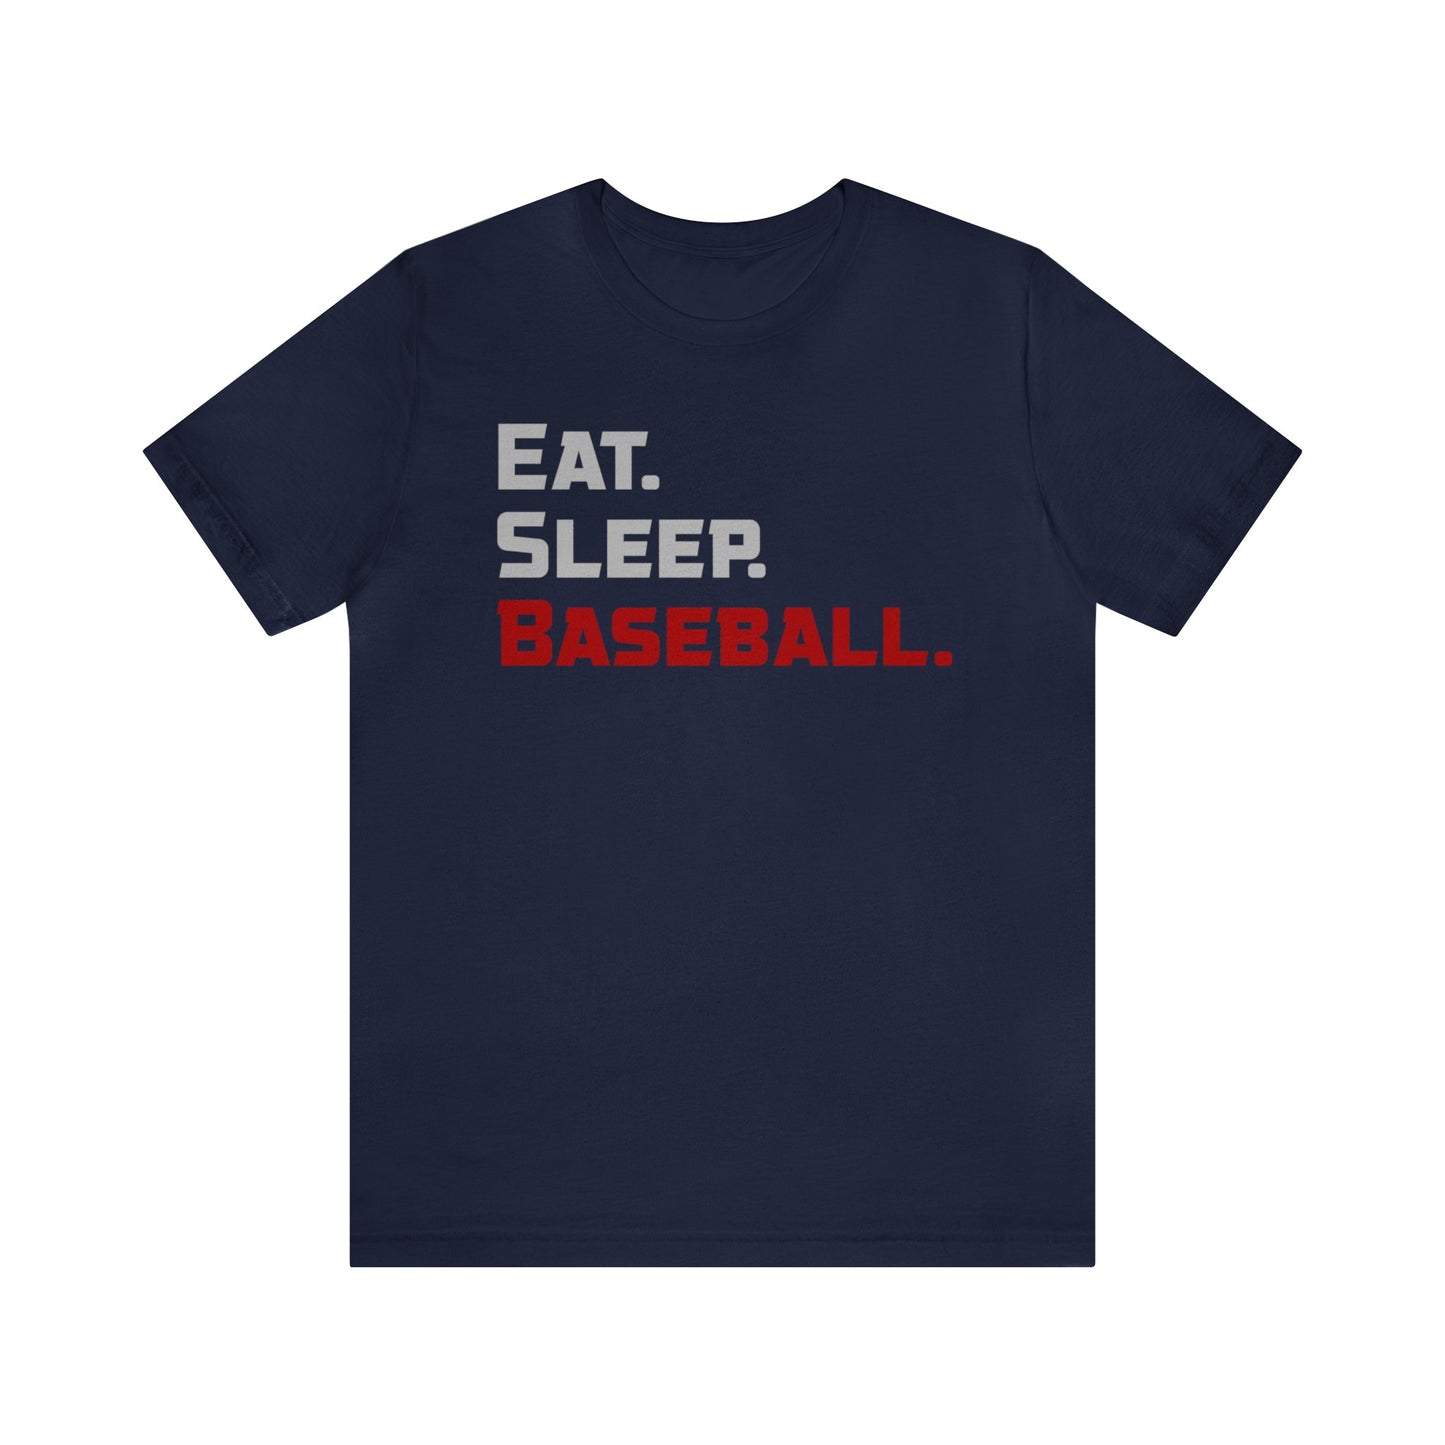 Eat. Sleep. Baseball. - T-shirt